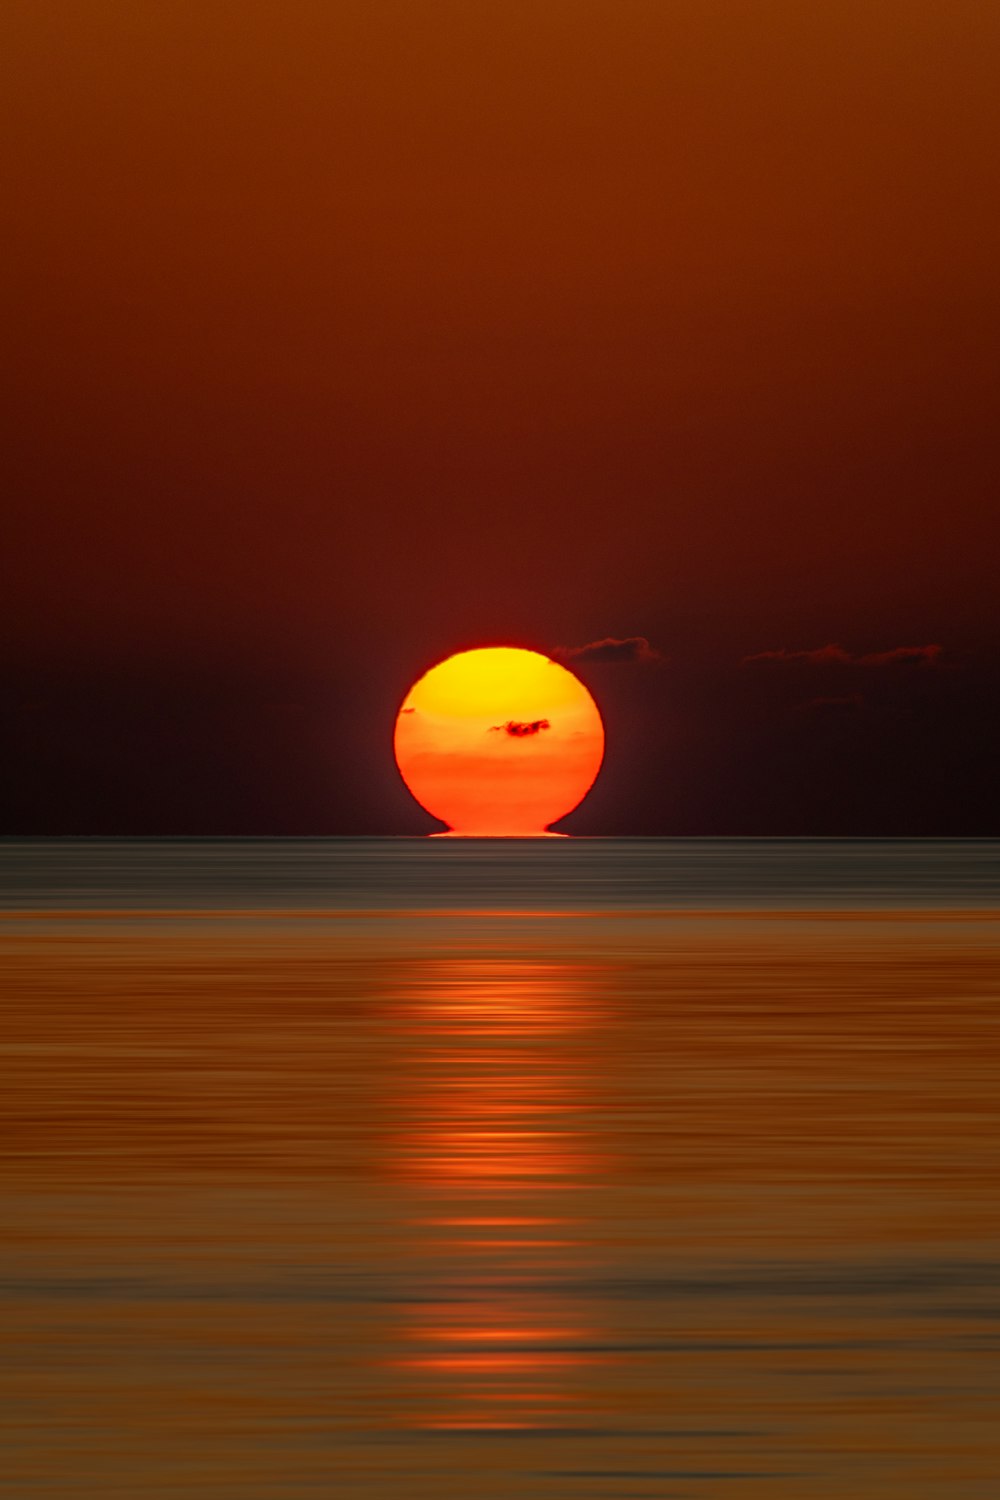 tramonto arancione sul mare